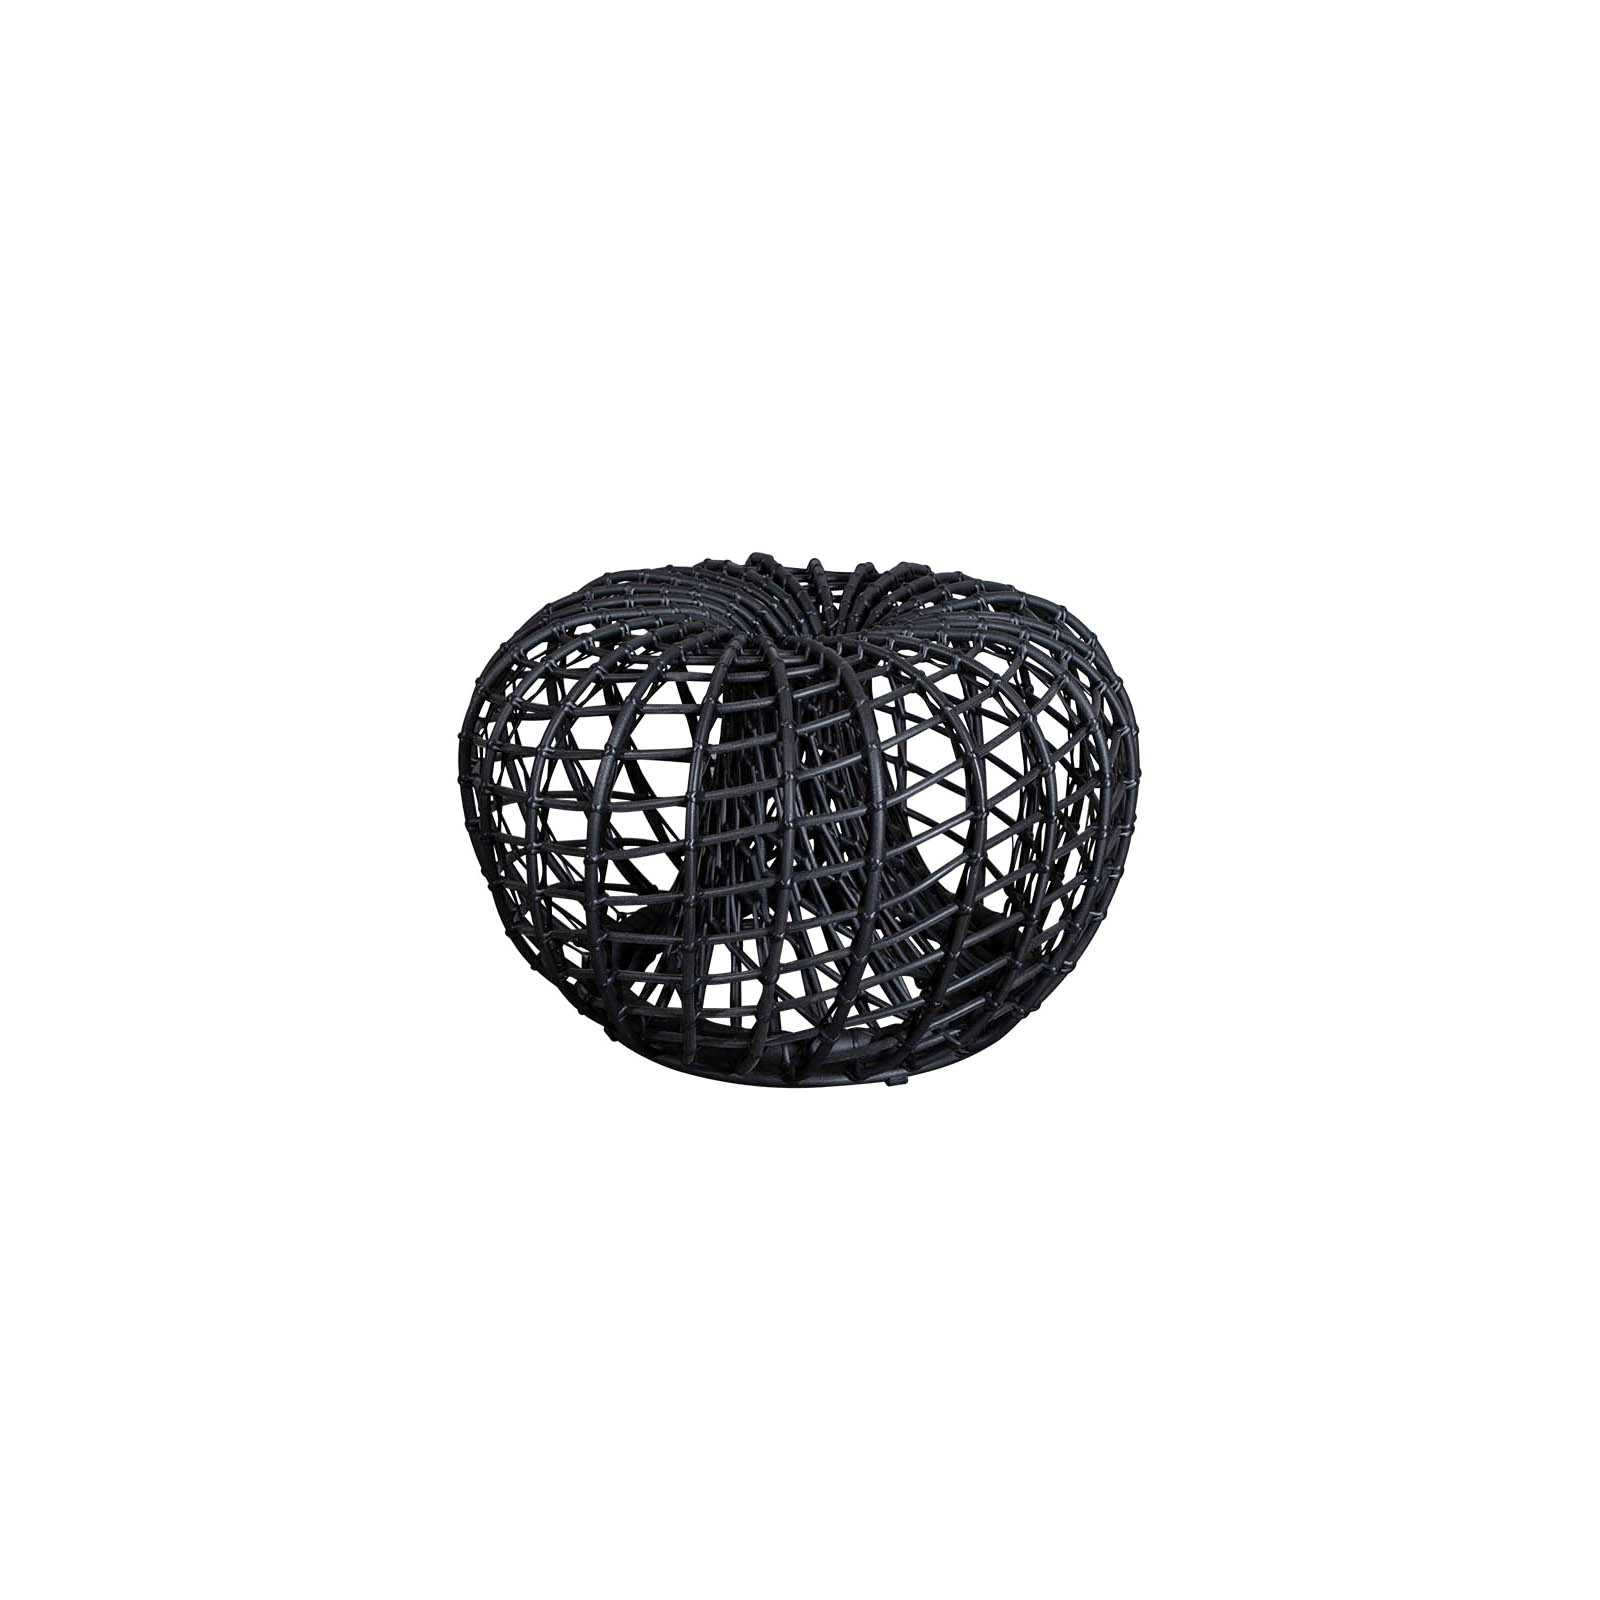 Nest Couchtisch oder Hocker kein mit Durchmesser 67 cm aus Cane-line Weave in Lava Grey